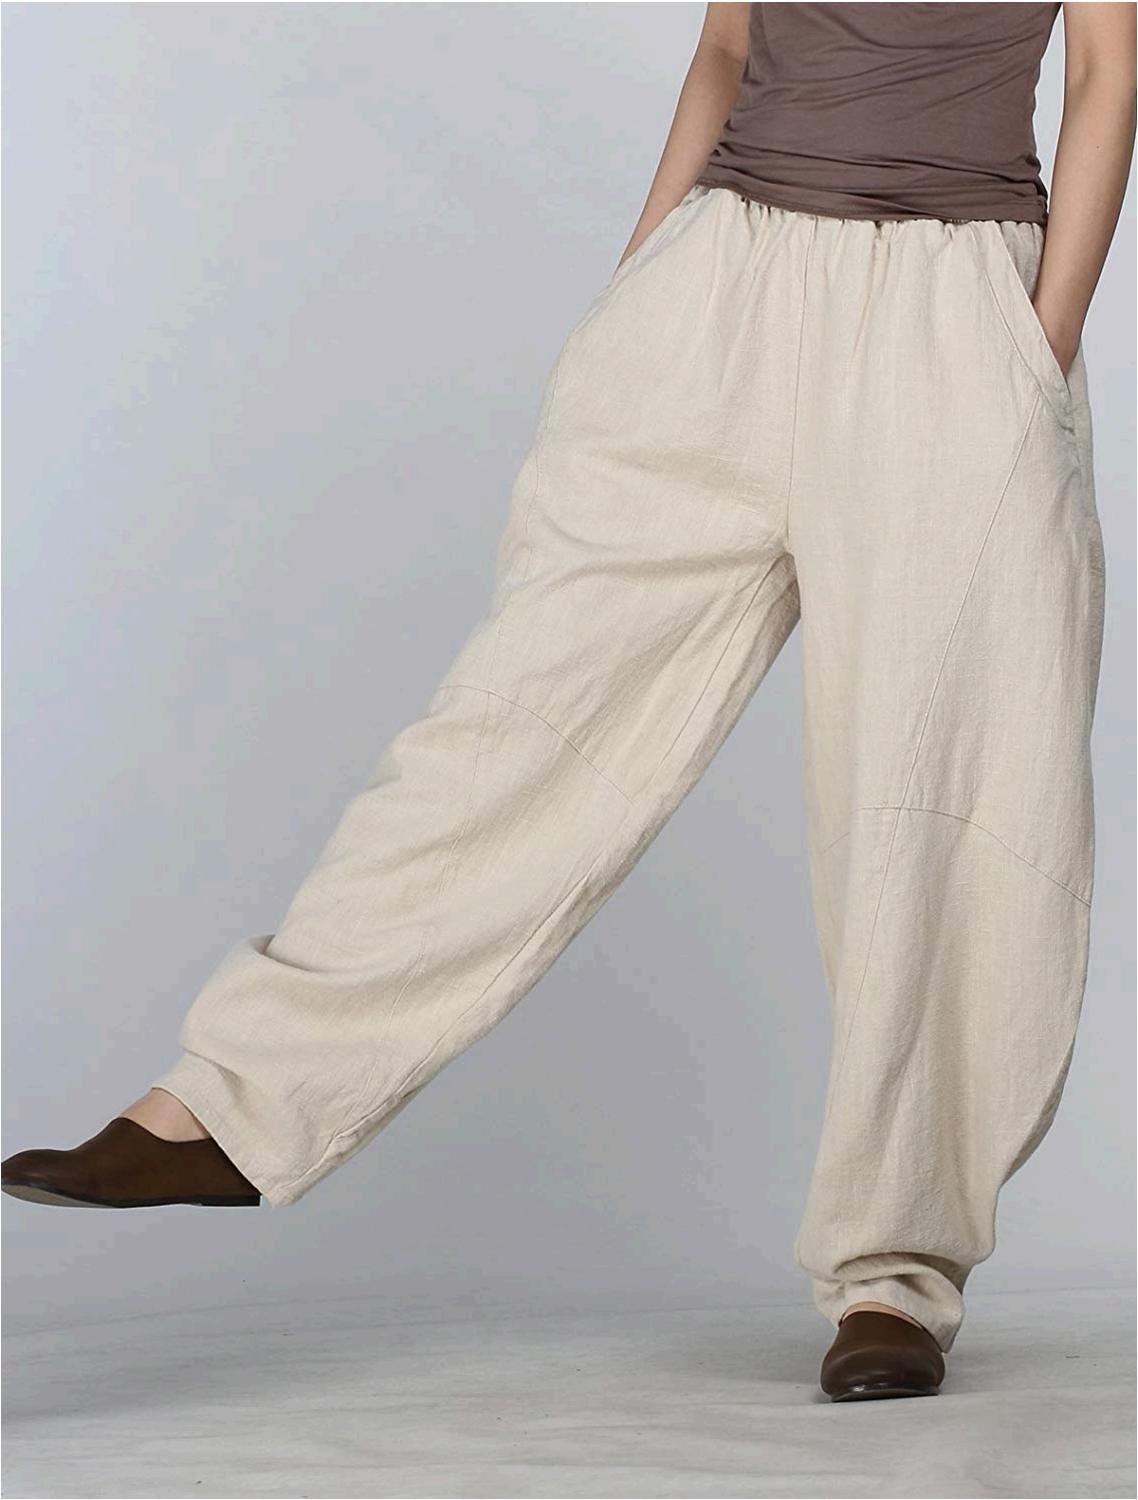 Cotton Pants Design For Ladies